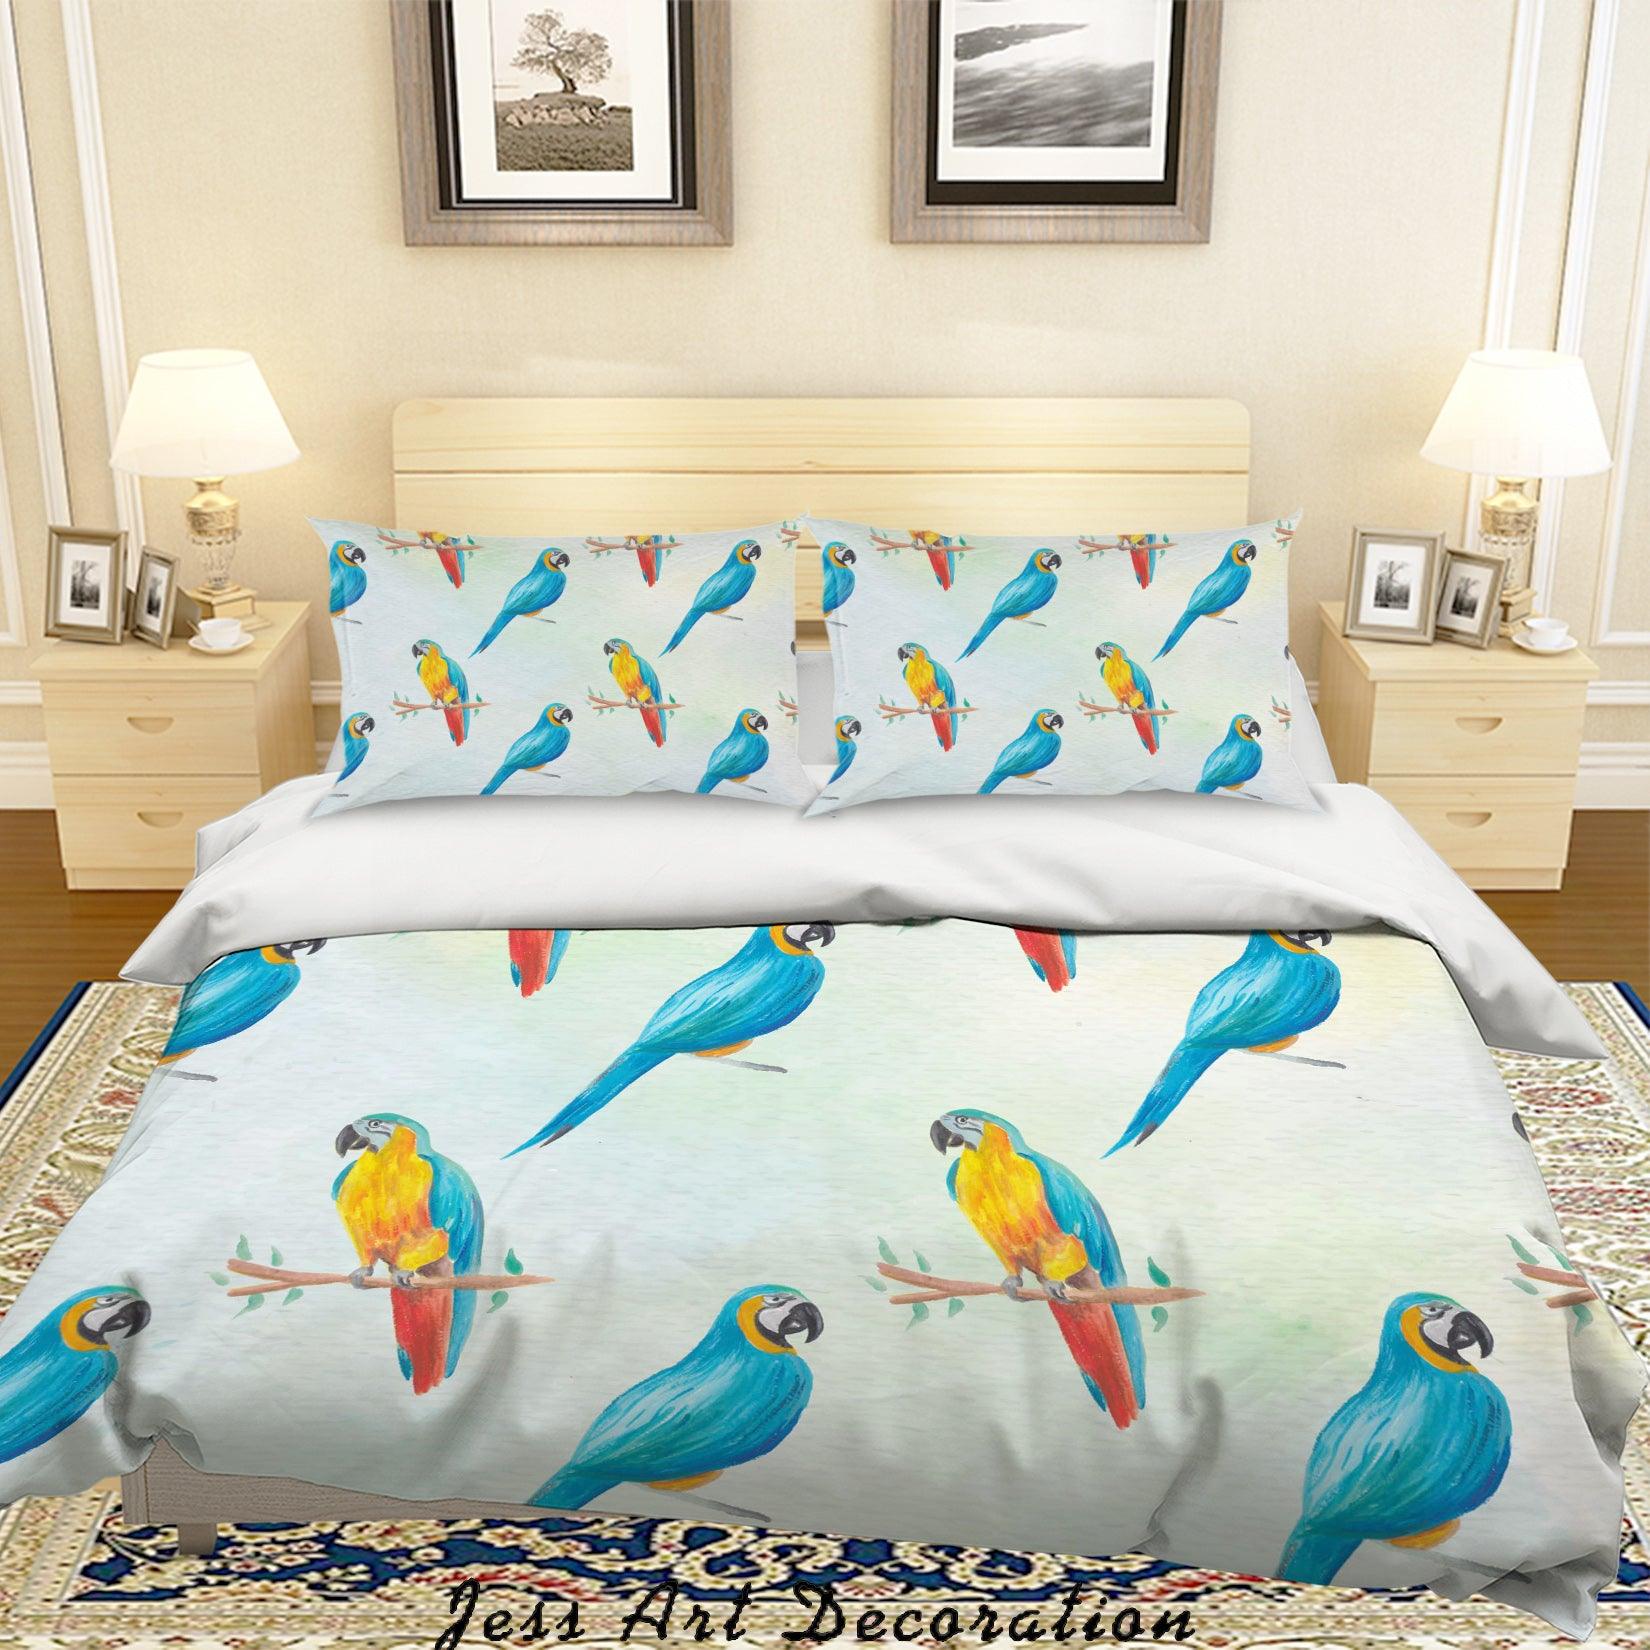 3D Watercolor Parrots Quilt Cover Set Bedding Set Pillowcases 123- Jess Art Decoration